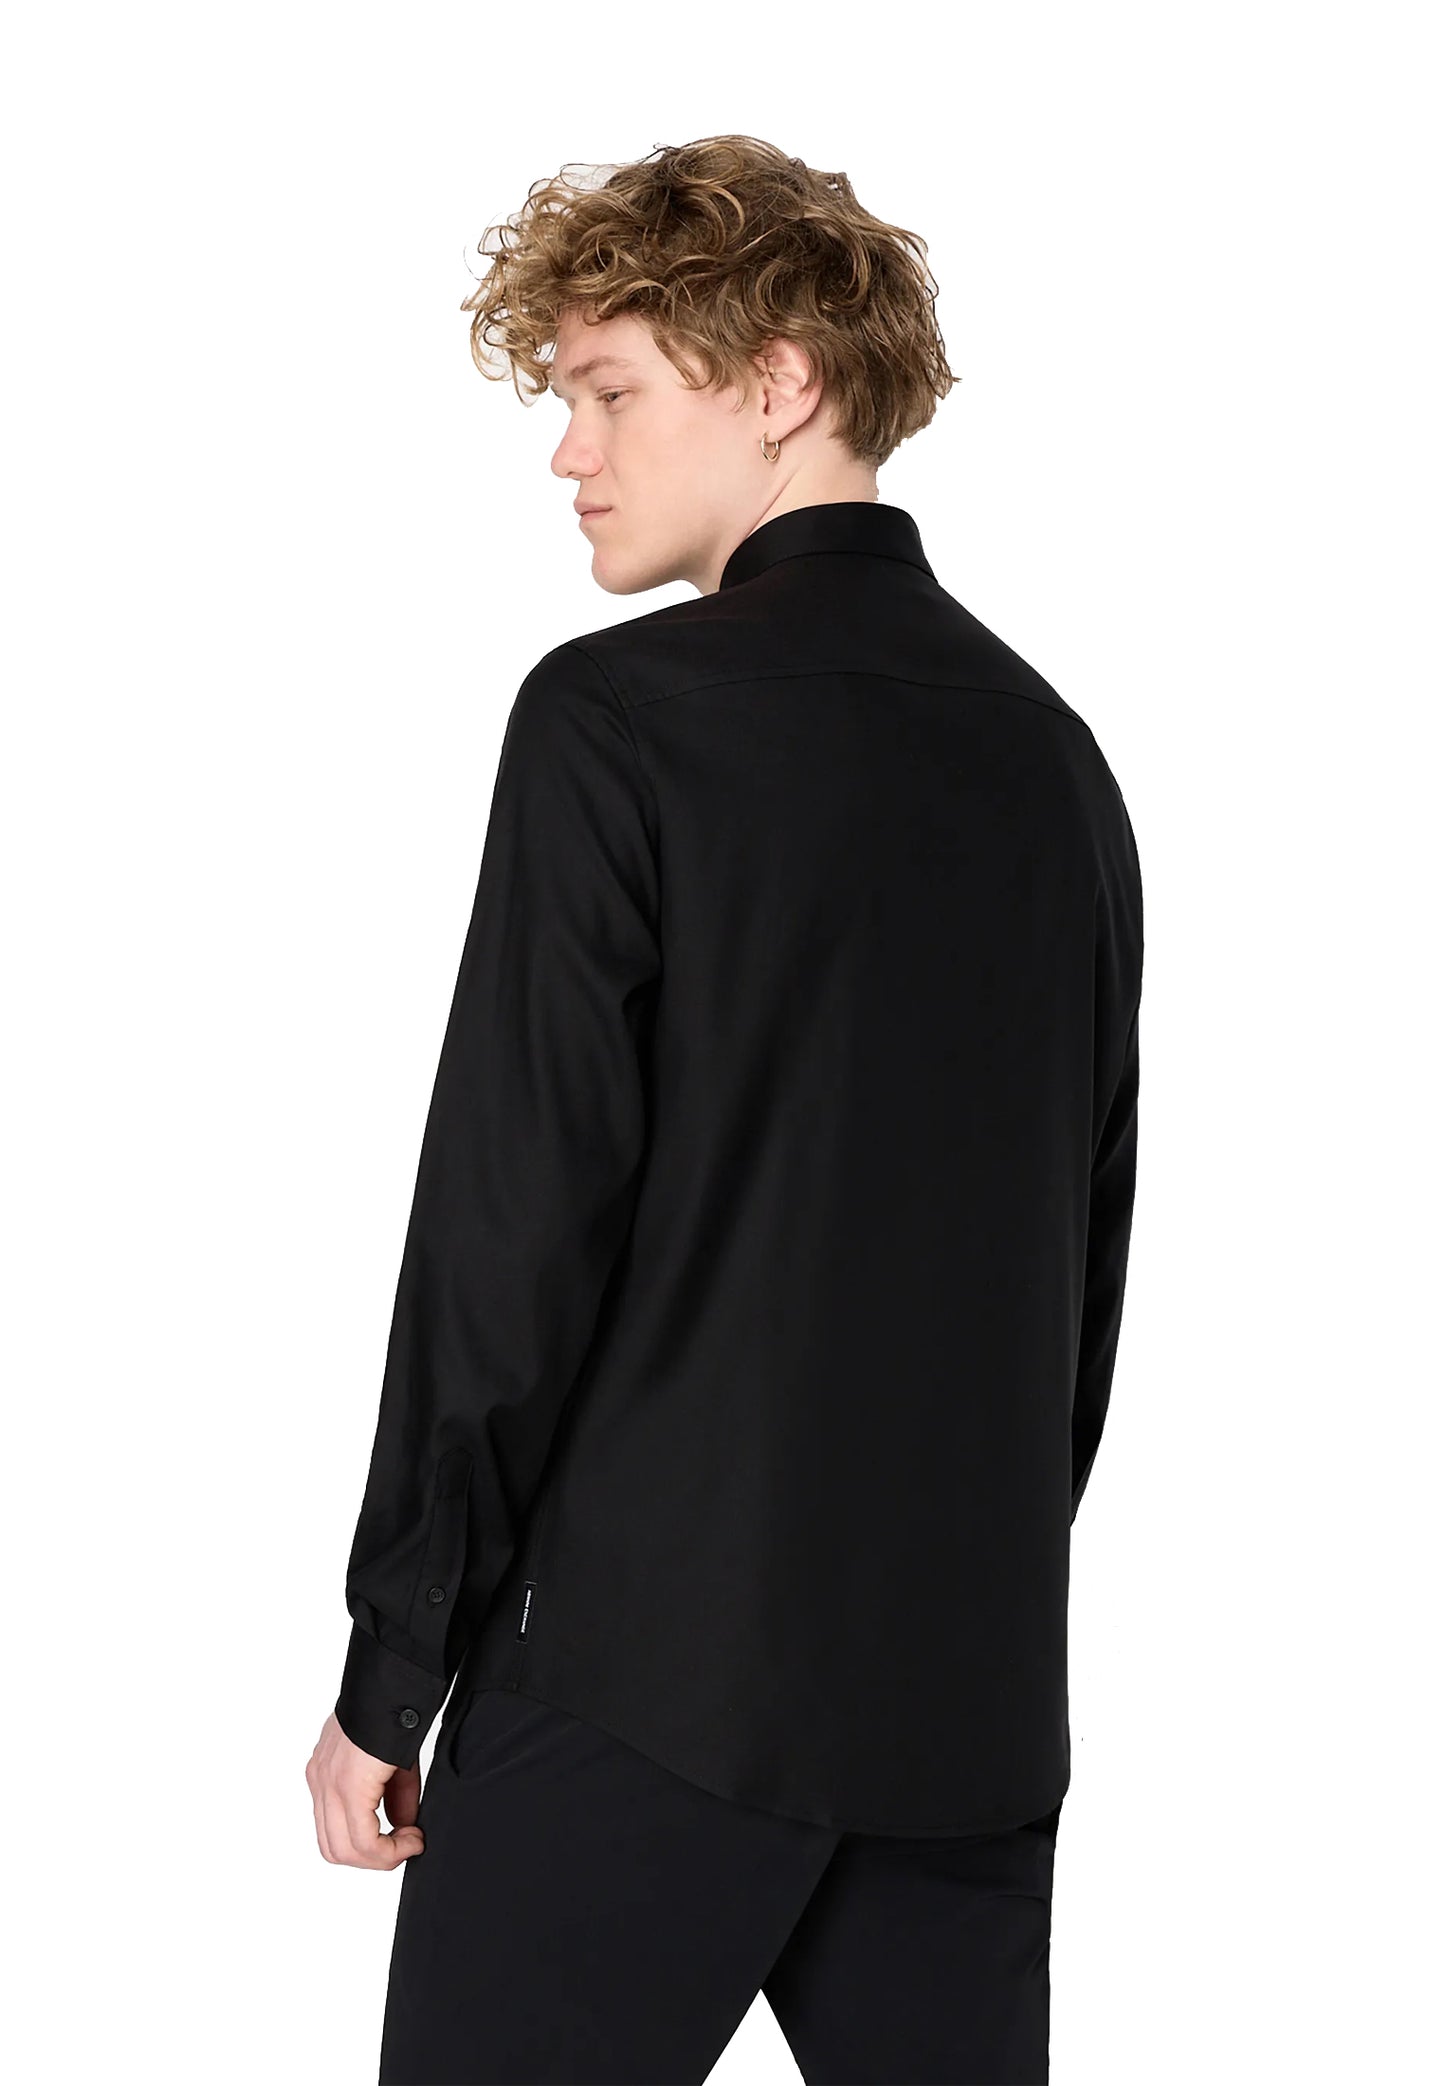 Camicia nera cotone satinato regular fit Armani Exchange P24